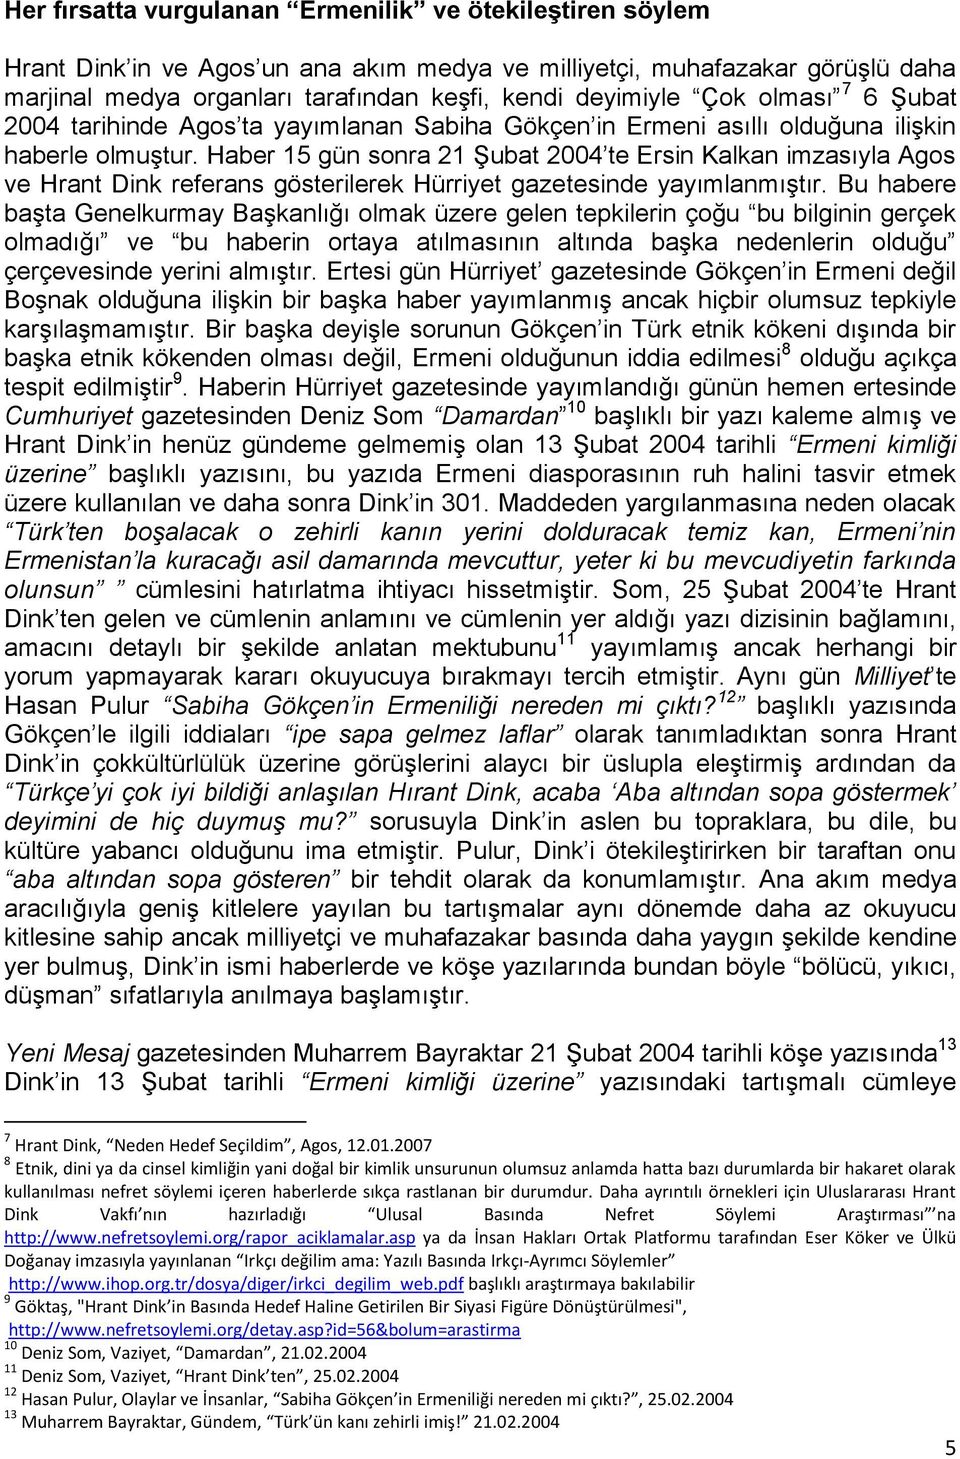 Haber 15 gün sonra 21 ġubat 2004 te Ersin Kalkan imzasıyla Agos ve Hrant Dink referans gösterilerek Hürriyet gazetesinde yayımlanmıģtır.